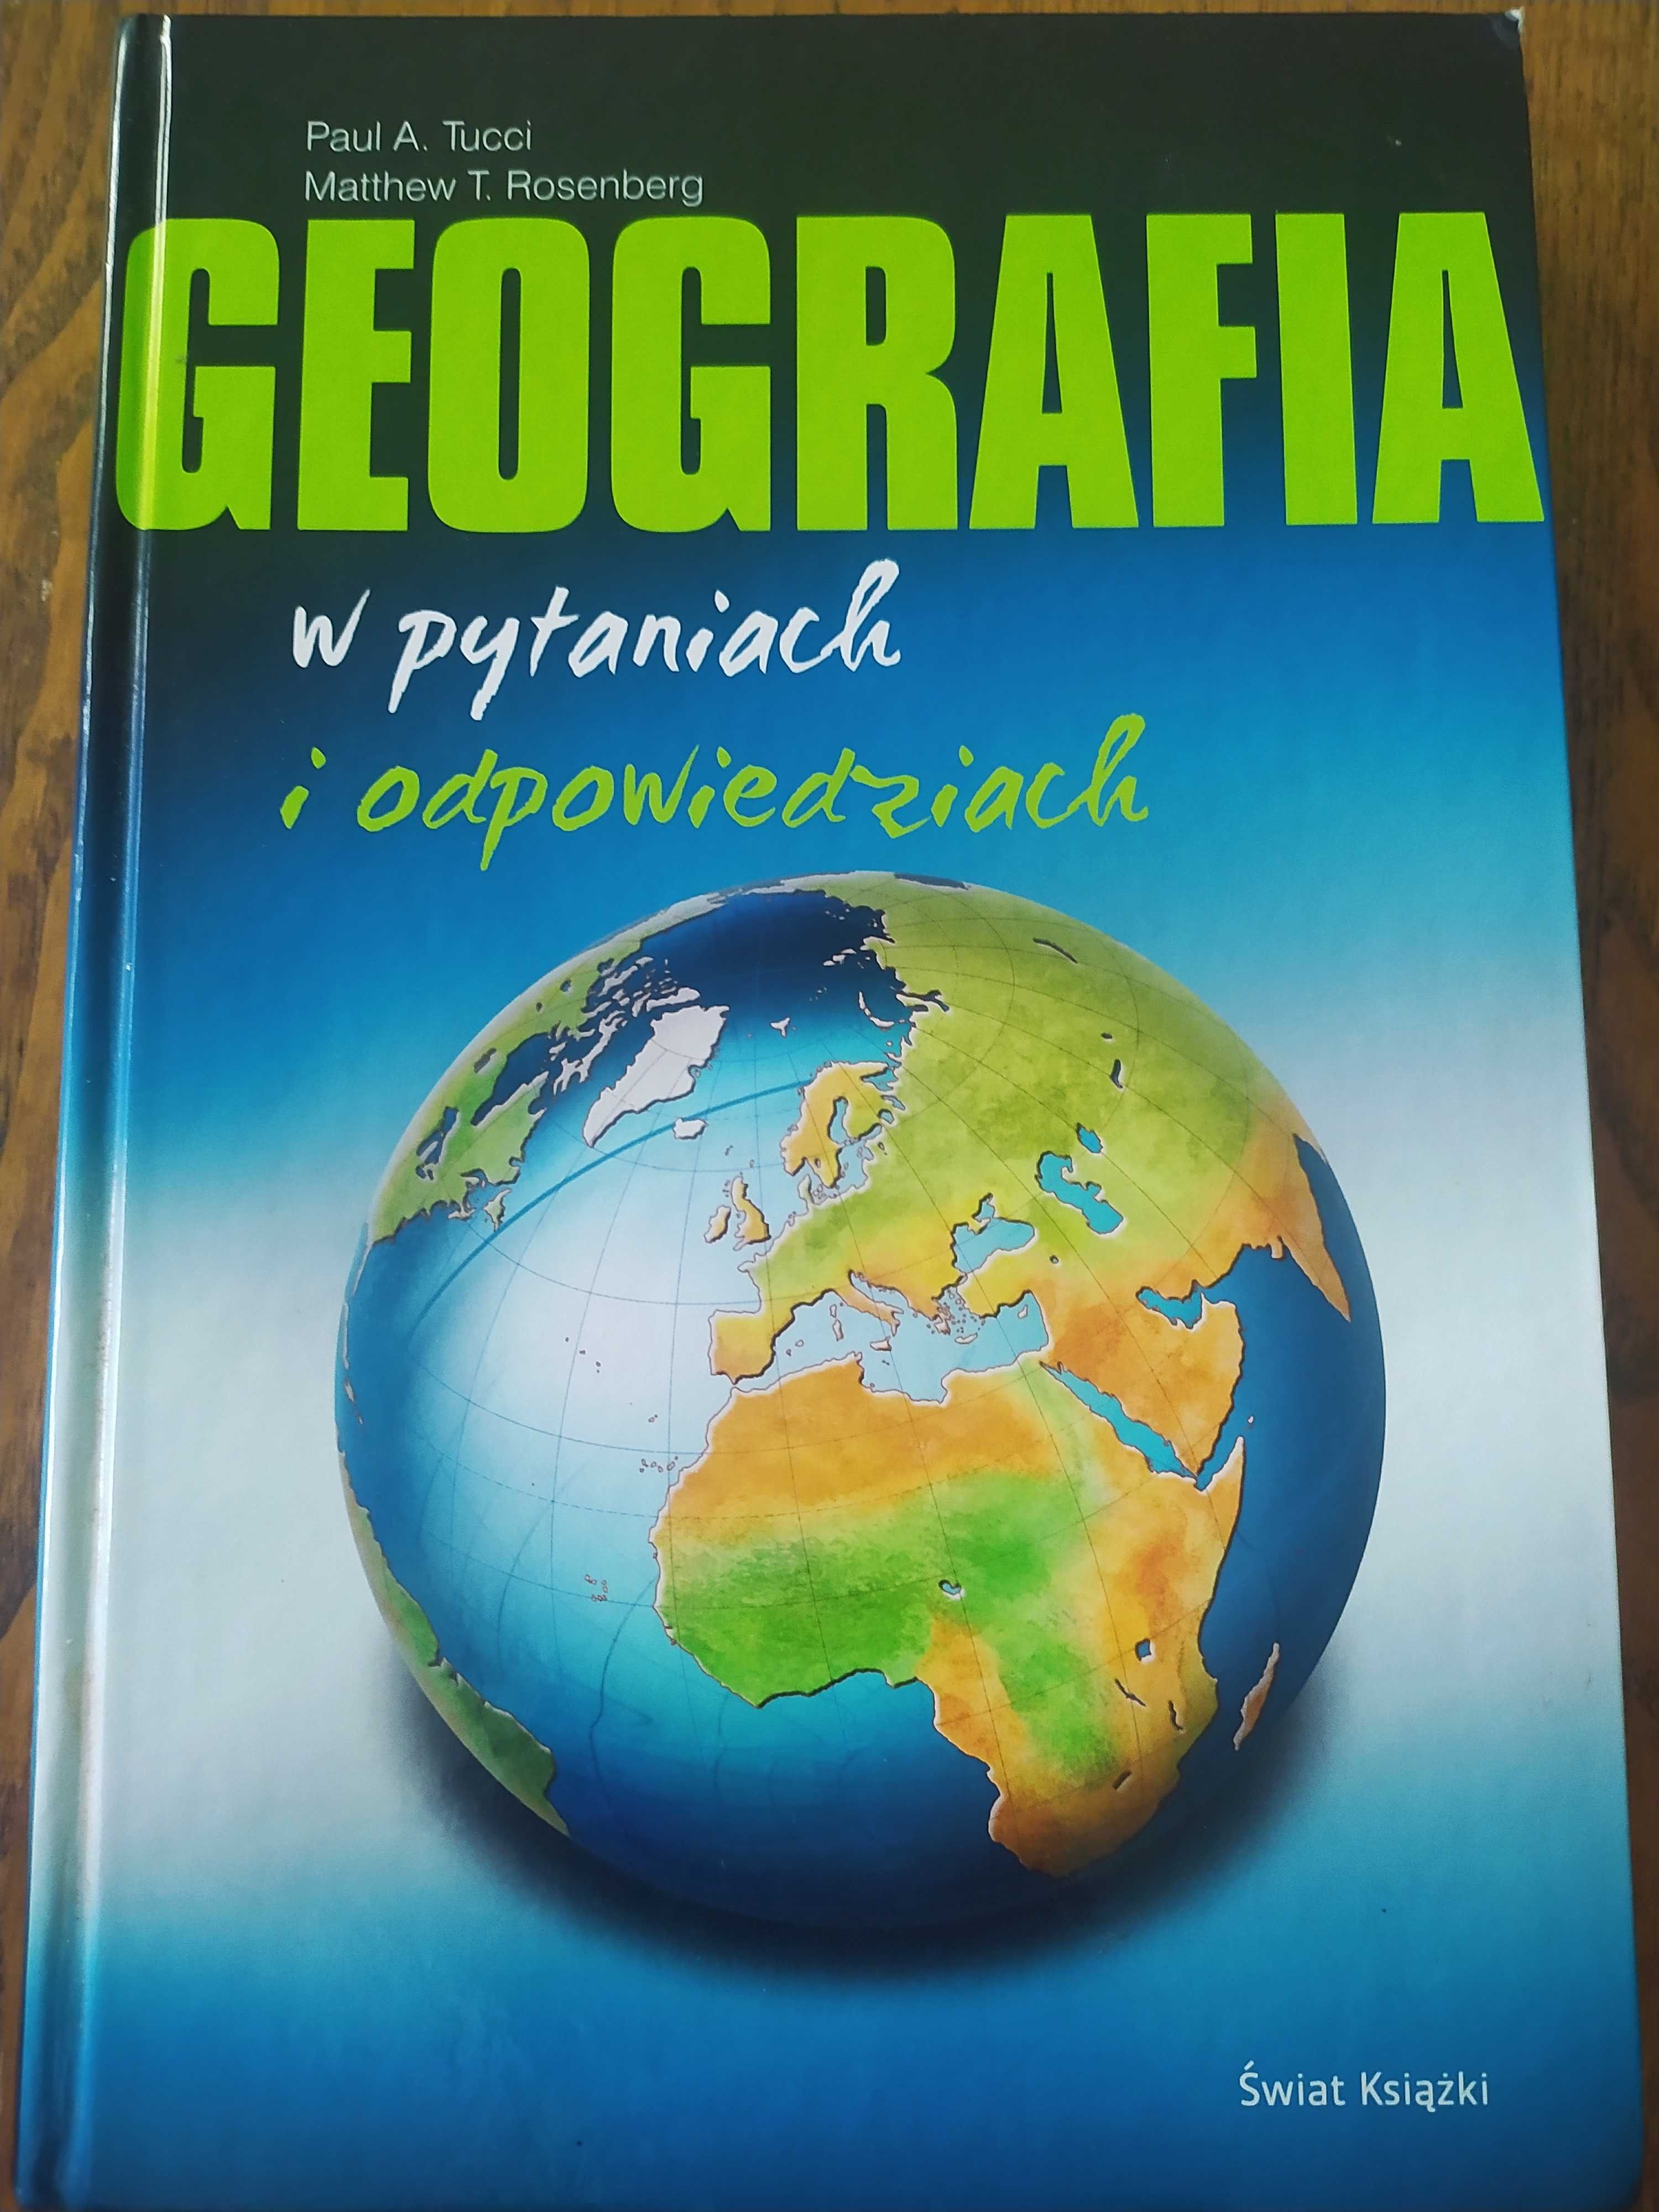 Geografia w pytaniach i odpowiedziach. Paul A. Tucci